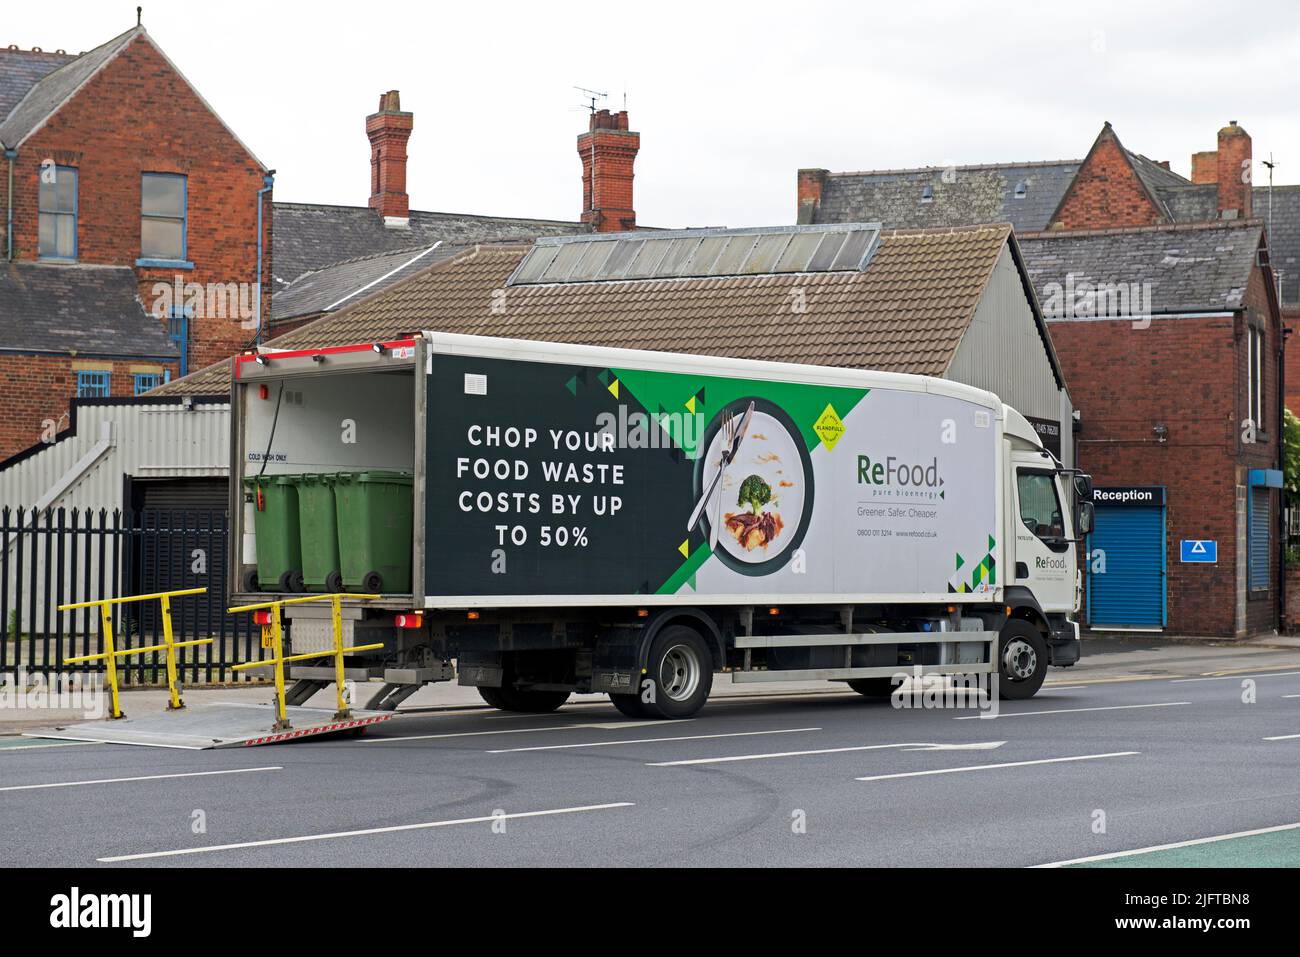 ReFood camion raccolta rifiuti alimentari, per la trasformazione in bioenergia, Goole, East Yorkshire, Inghilterra Regno Unito Foto Stock